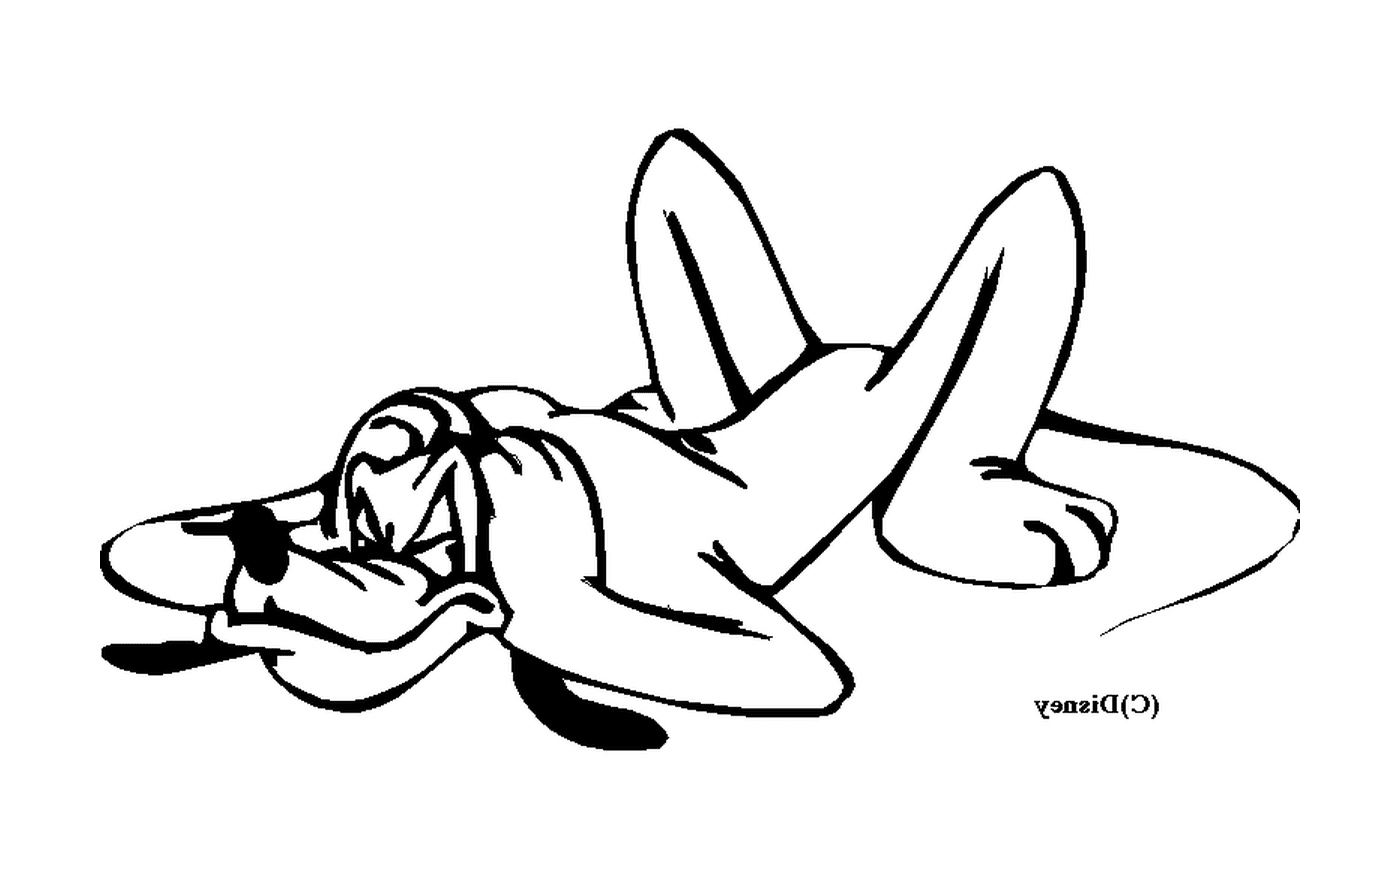  Женщина, лежащая на полу 